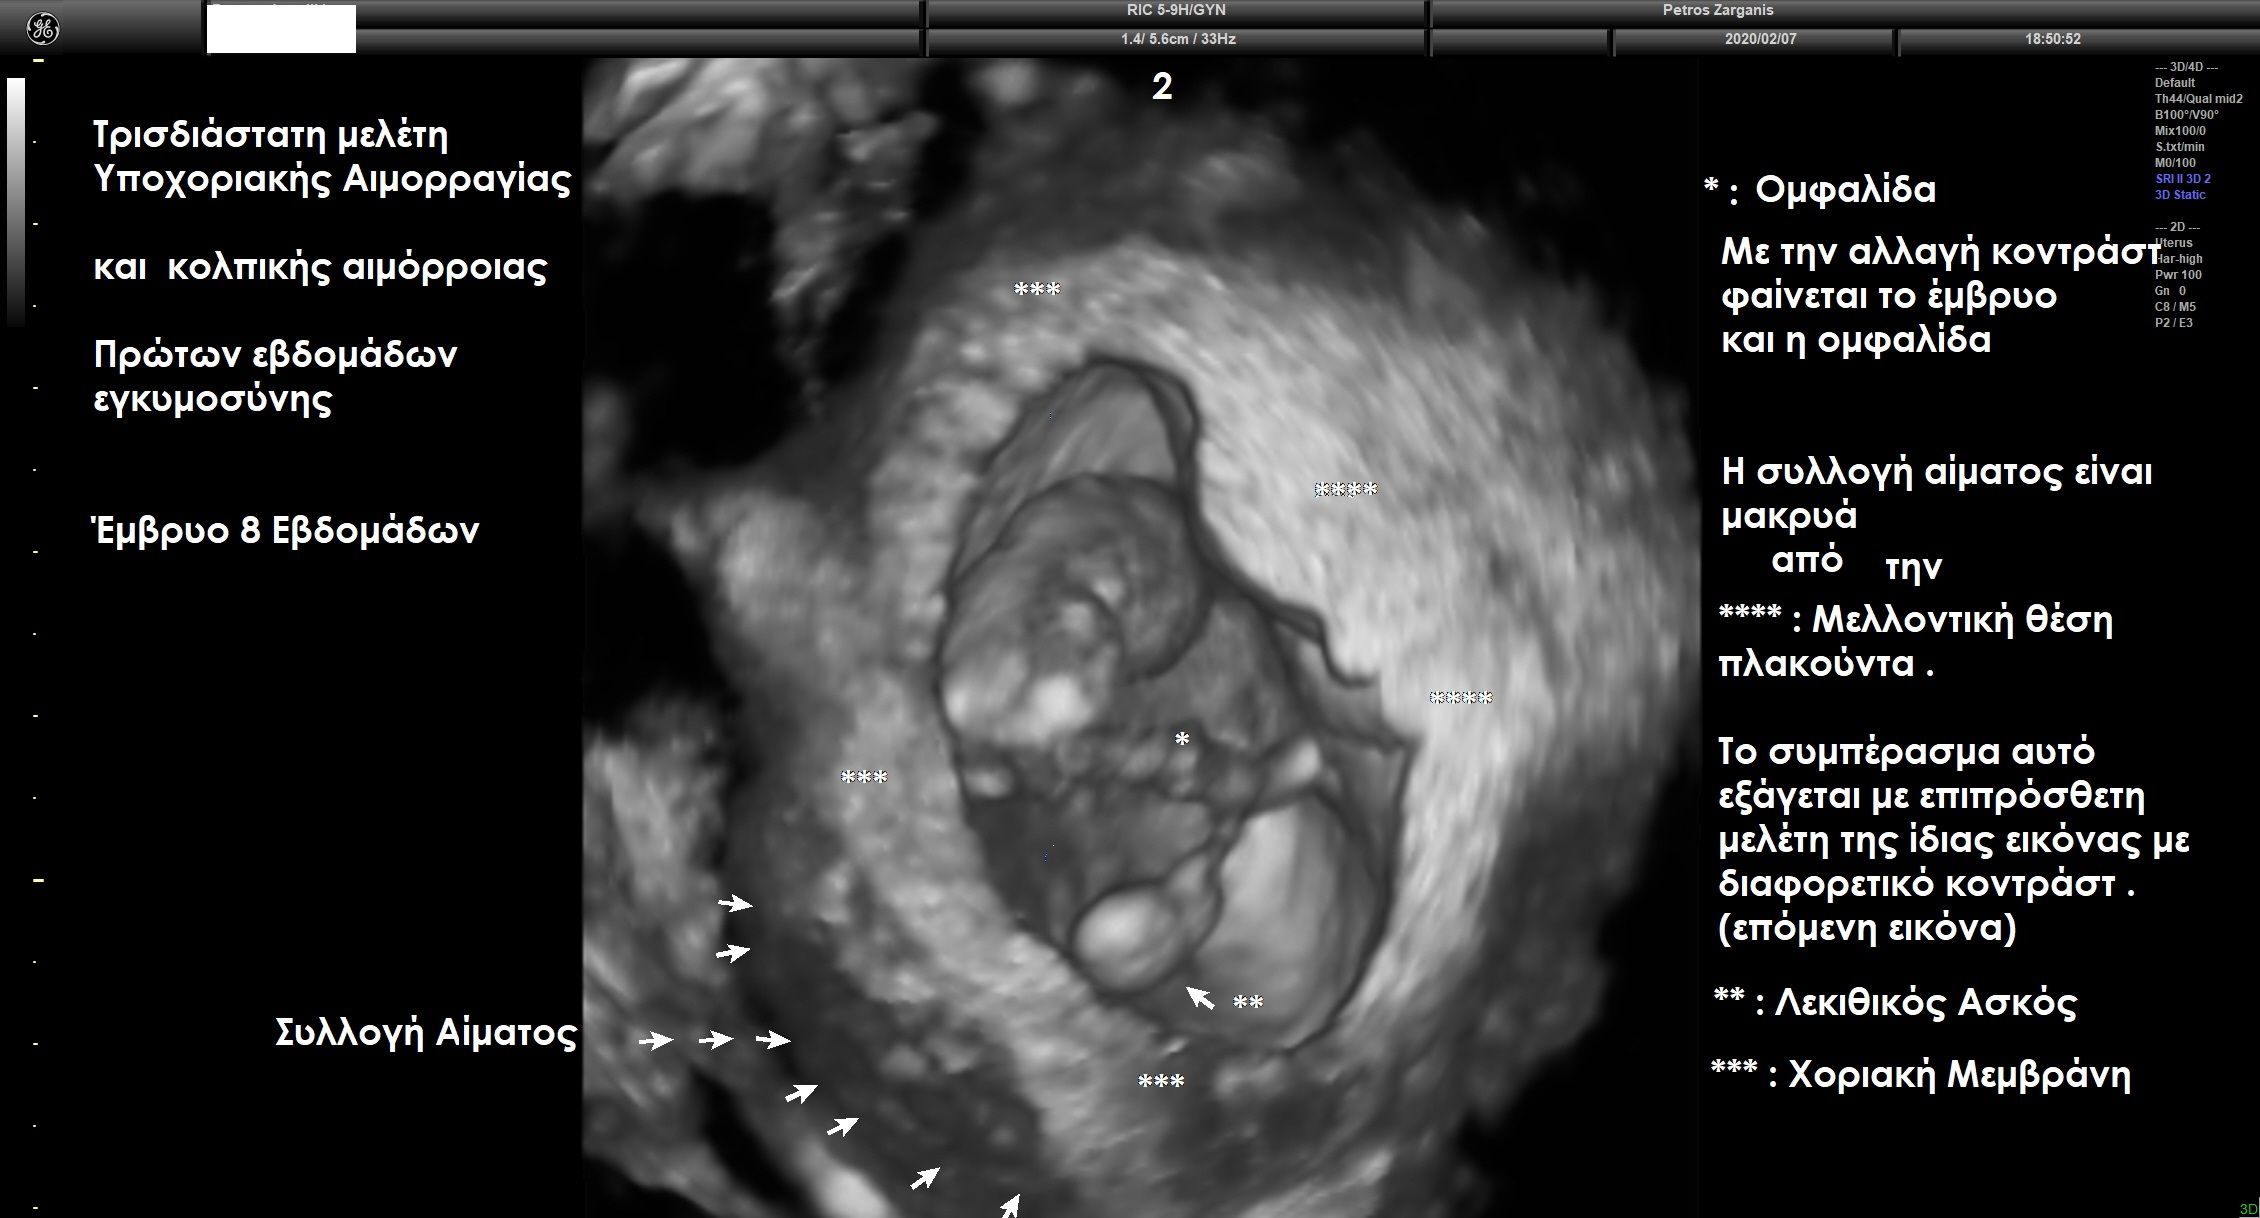 Τρισδιάστατη απεικόνιση της εγκυμοσύνης και του σάκου έτσι ώστε να γίνει καλύτερα κατανοητός ο εντοπισμός της αιμορραγίας . 
Εδώ, έχει αφαιρεθεί η απεικόνιση της αμνιακής μεμβράνης , οπότε φαίνεται το έμβρυο και η ομφαλίδα .